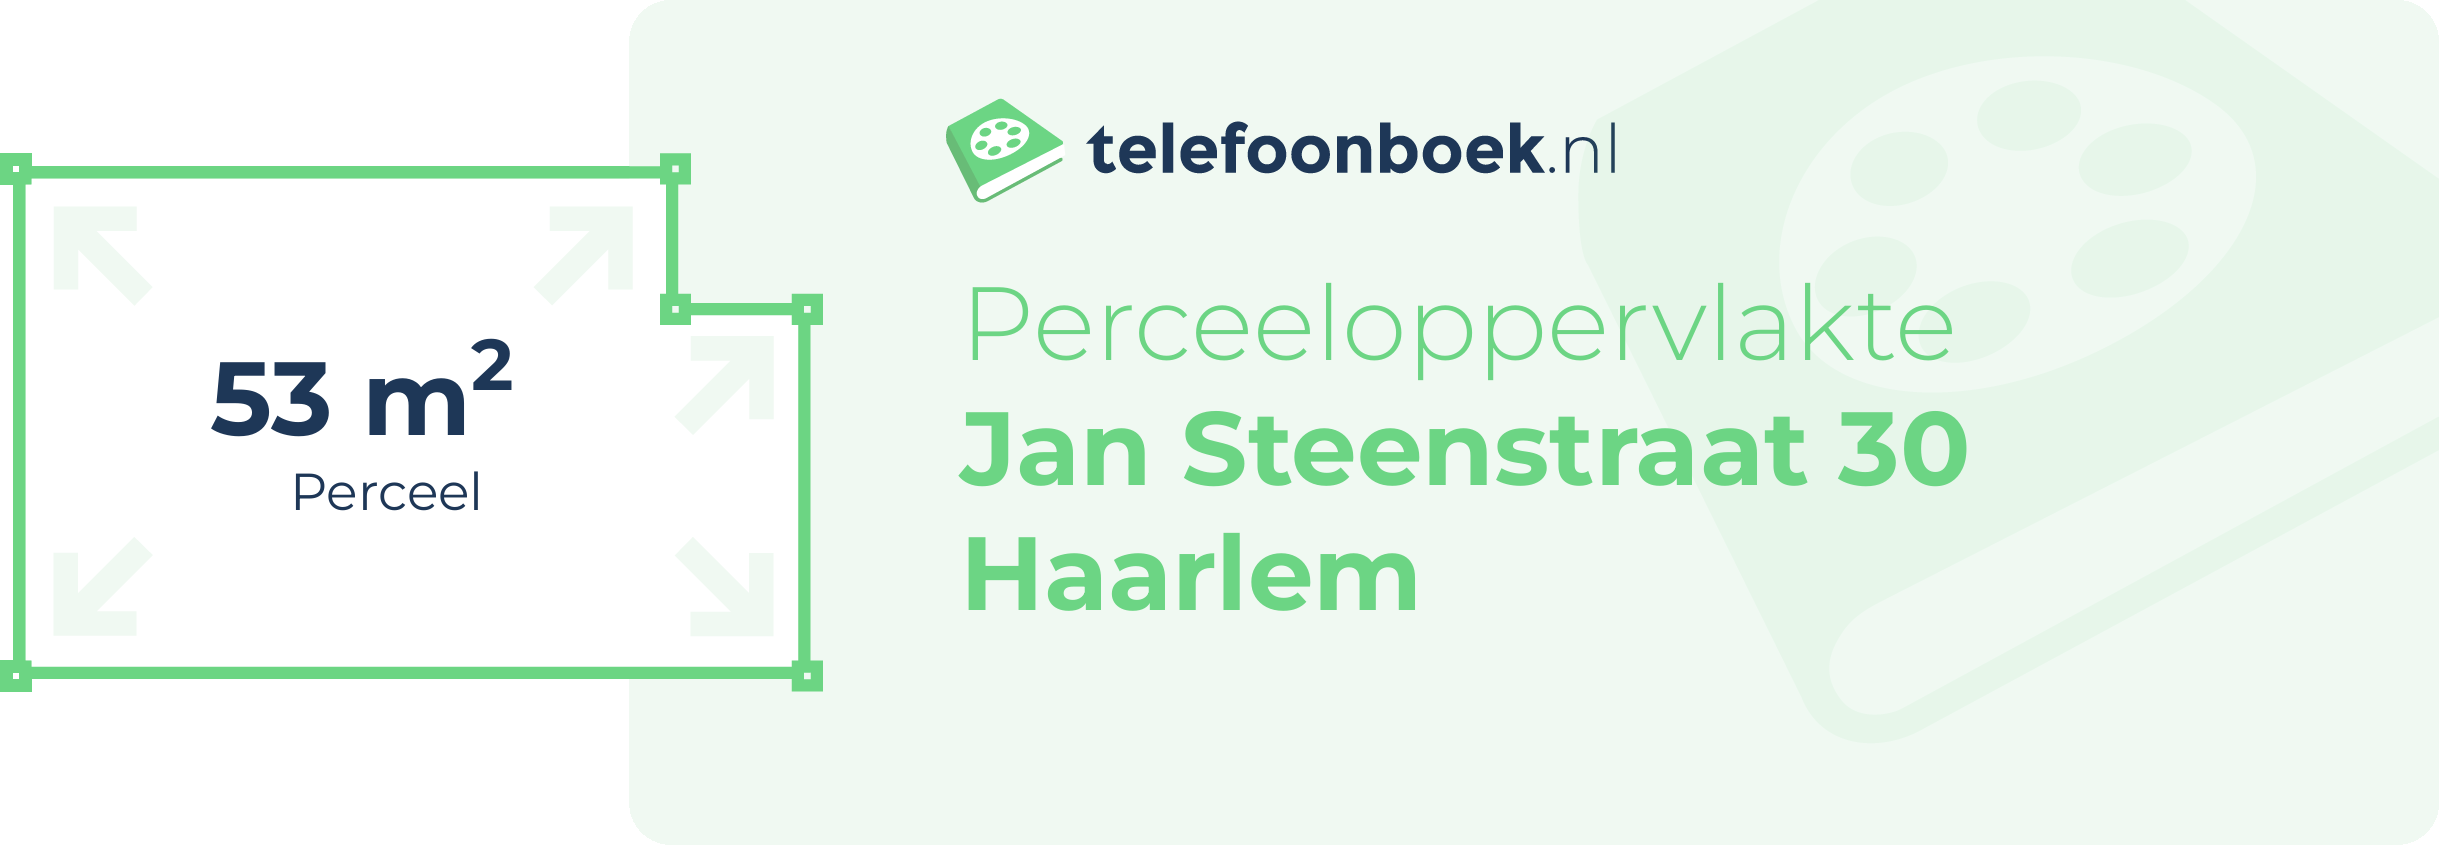 Perceeloppervlakte Jan Steenstraat 30 Haarlem